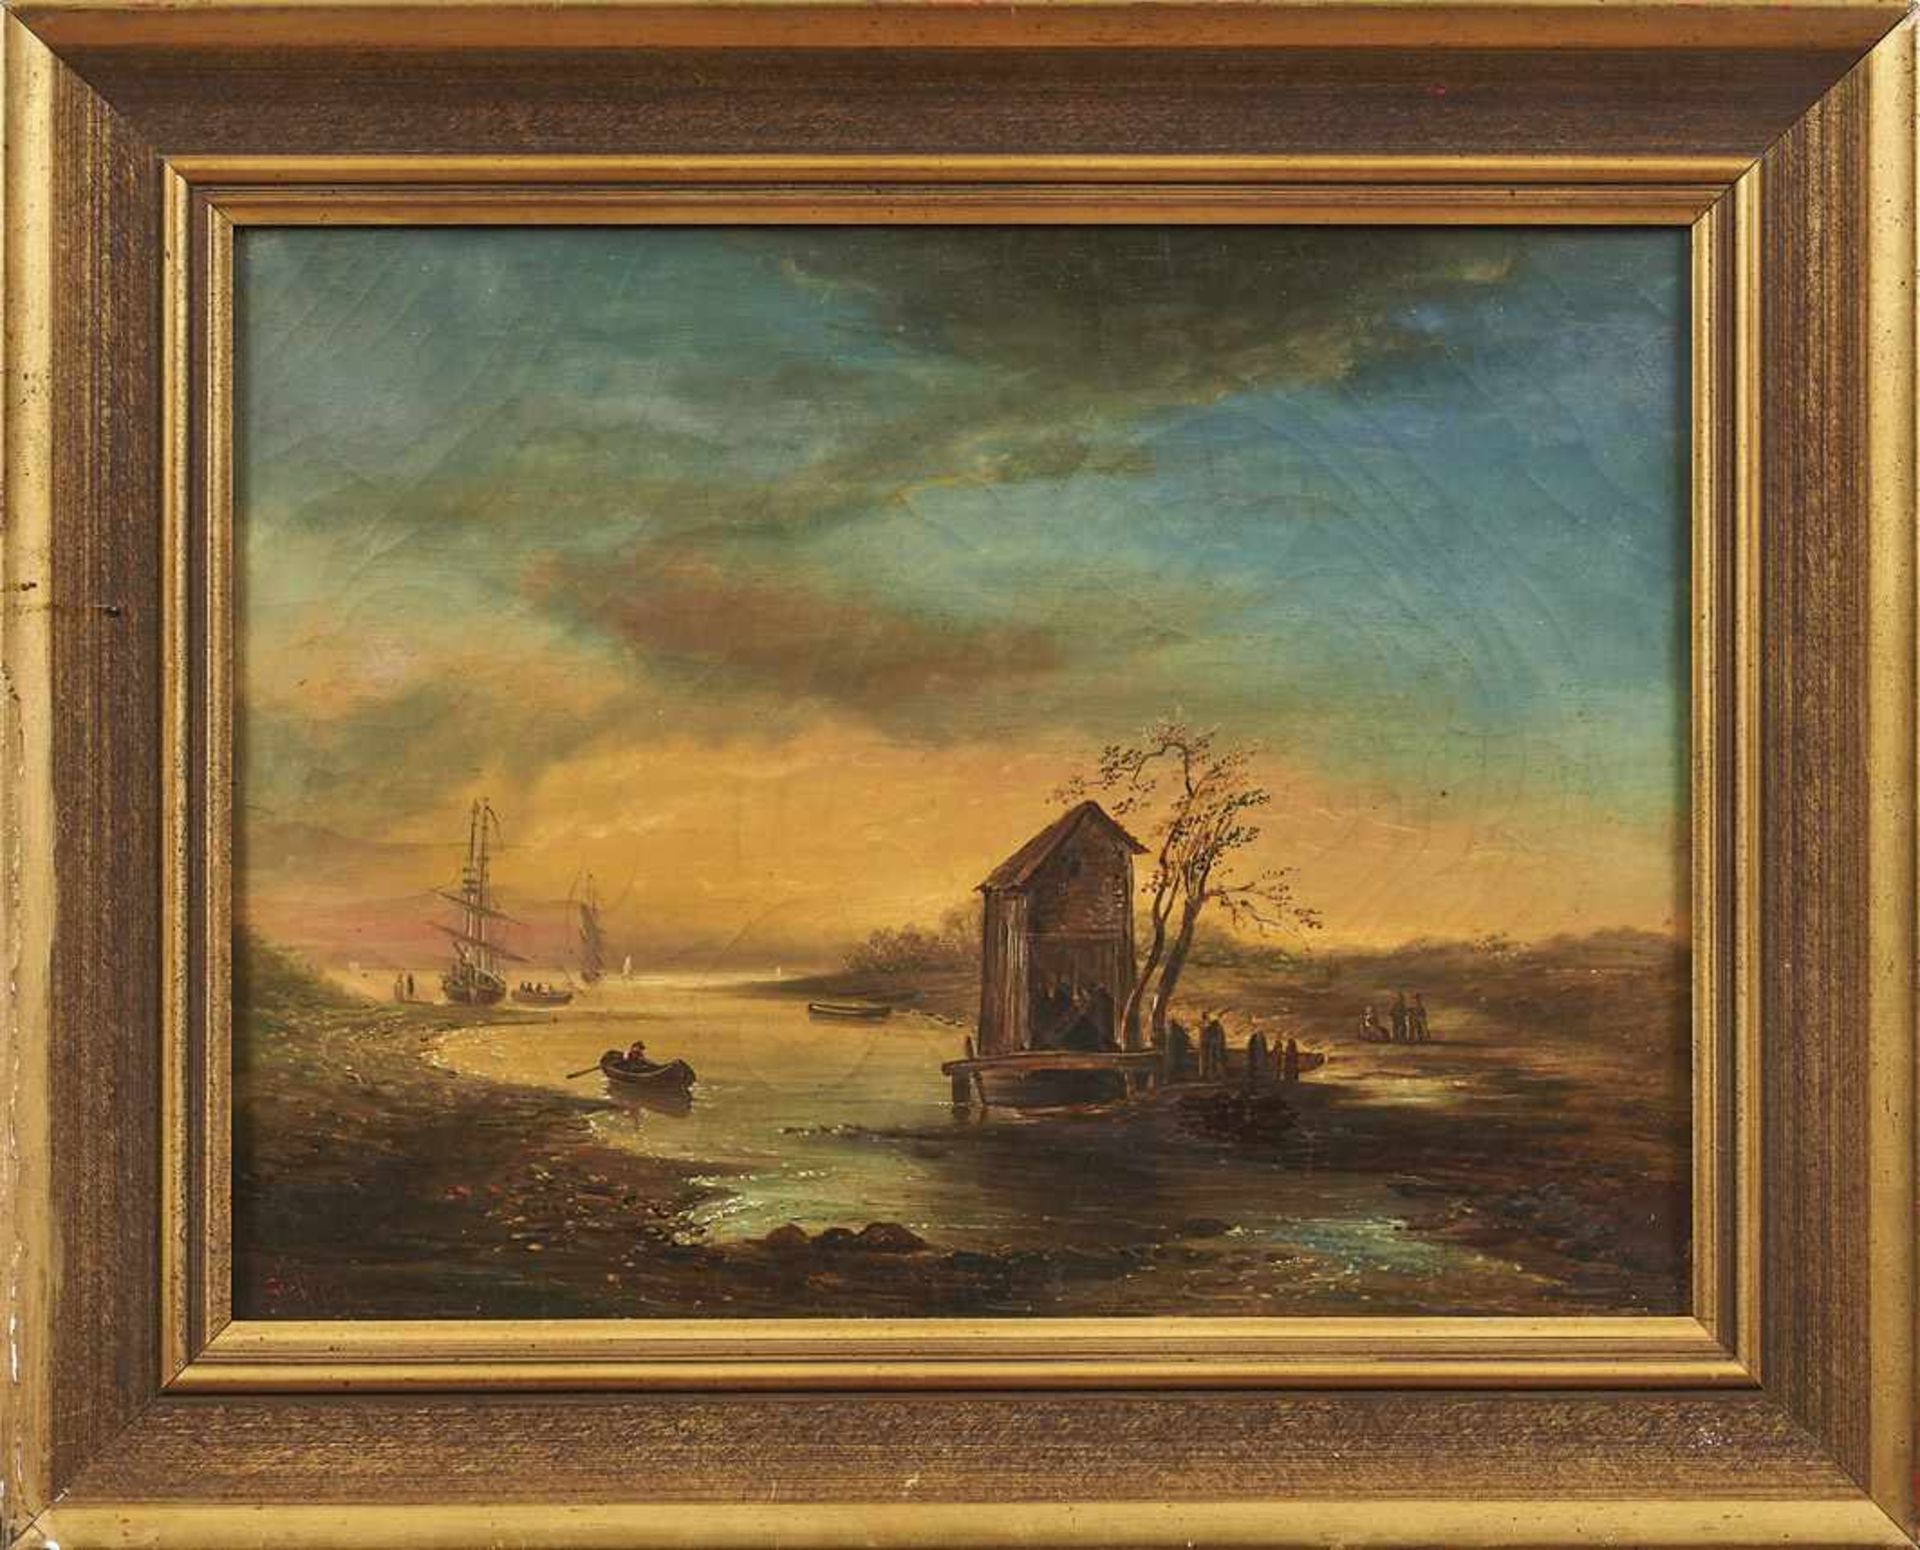 Geoffroy, Jean-Baptiste Uferlandschaft mit Booten, Schiffen und Personen im Abendlicht (